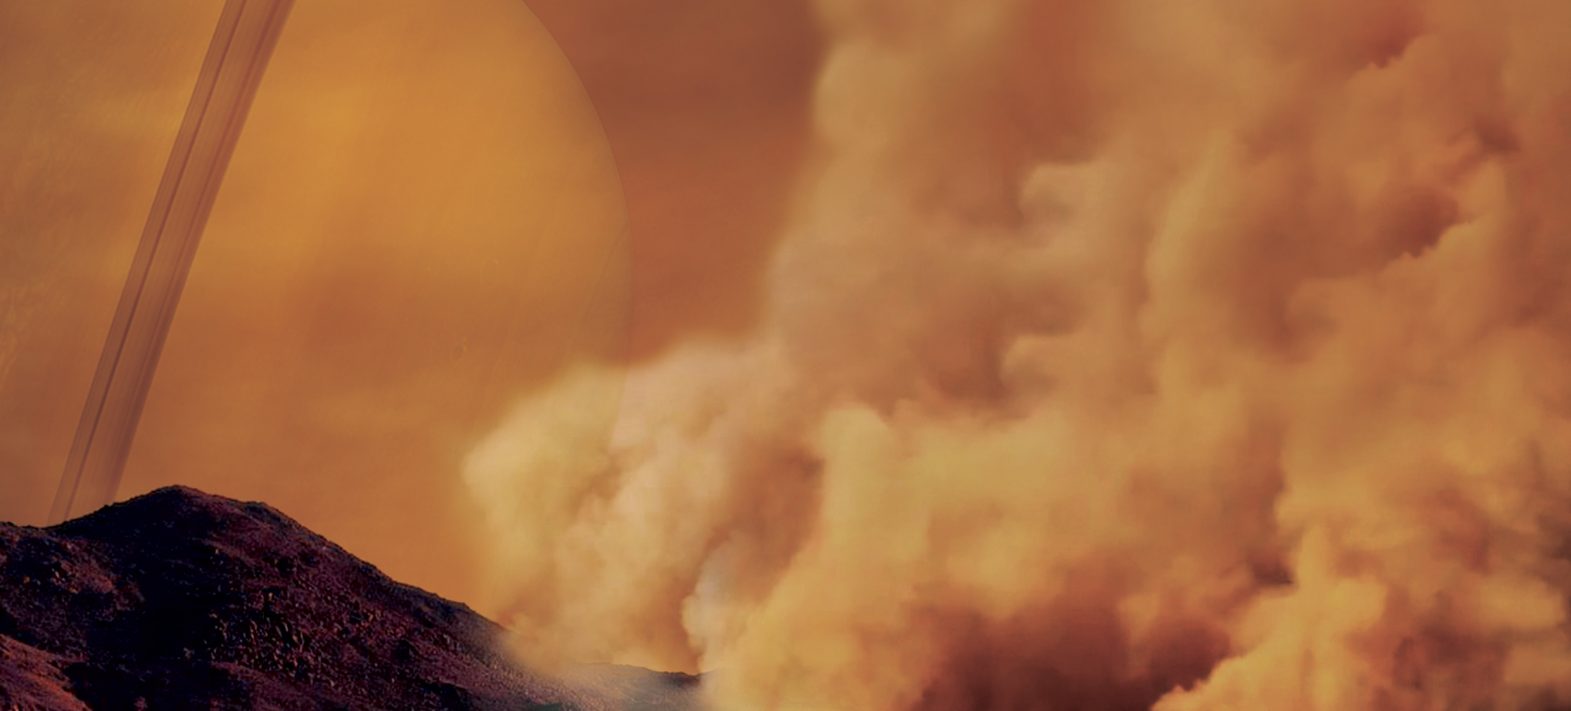 Cassini détecte pour la première fois des tempêtes de poussière sur Titan